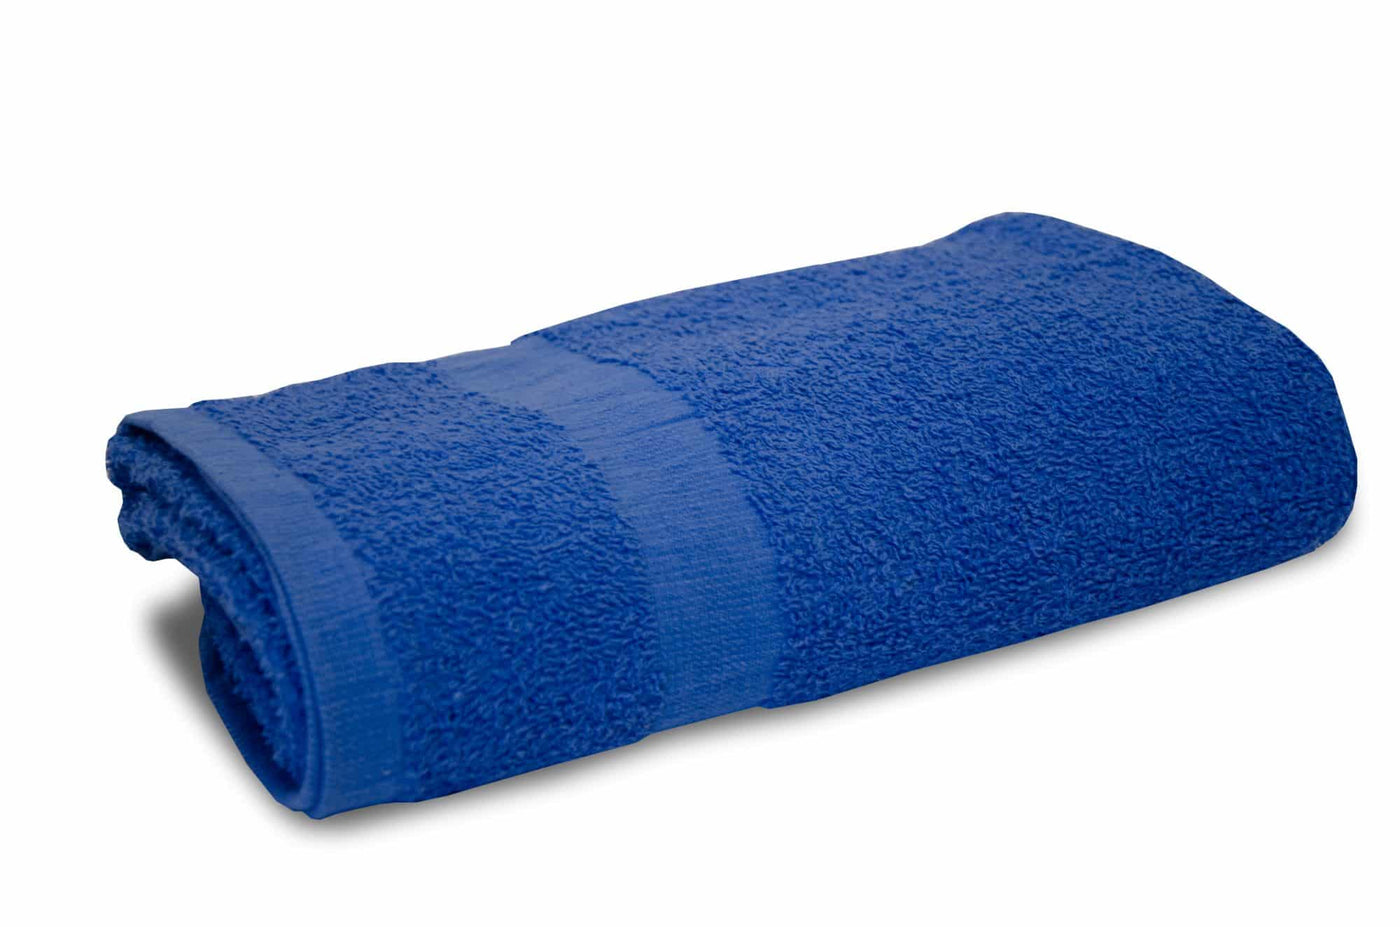 Mid Blue 100% Cotton Bath Towel with Cam Border design  #colour_mid-blue